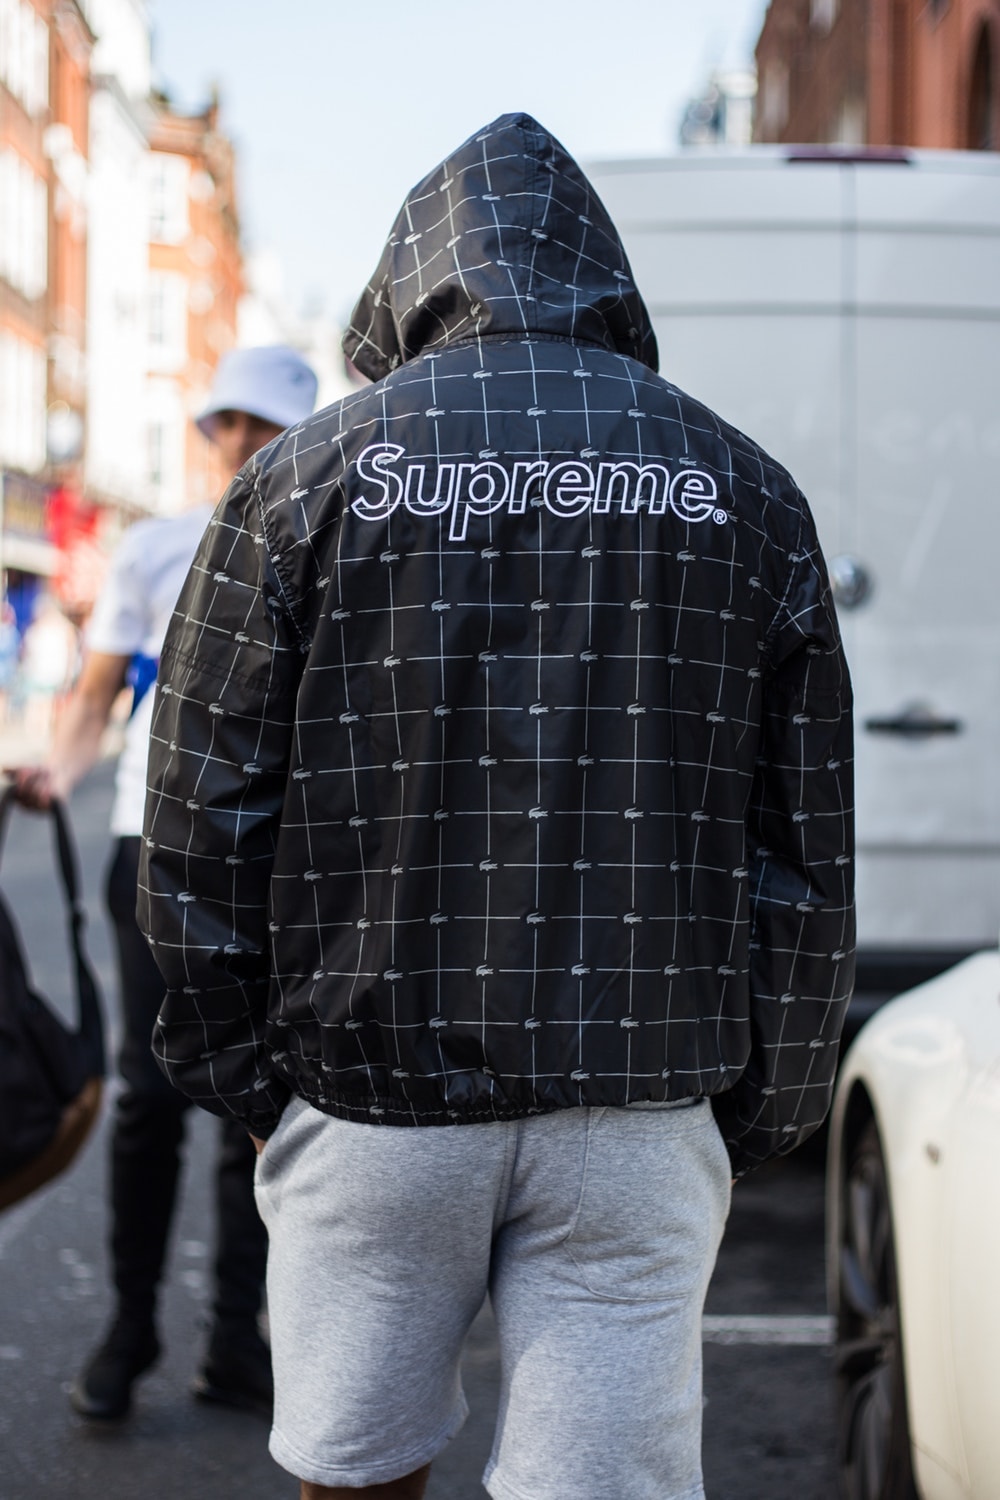 Supreme x Lacoste が登場した #WEEK9 のロンドンローンチをレポート 国内ローンチに備えてコラボアイテムを纏った〈Supreme〉ファンたちのストリートスナップをチェックせよ